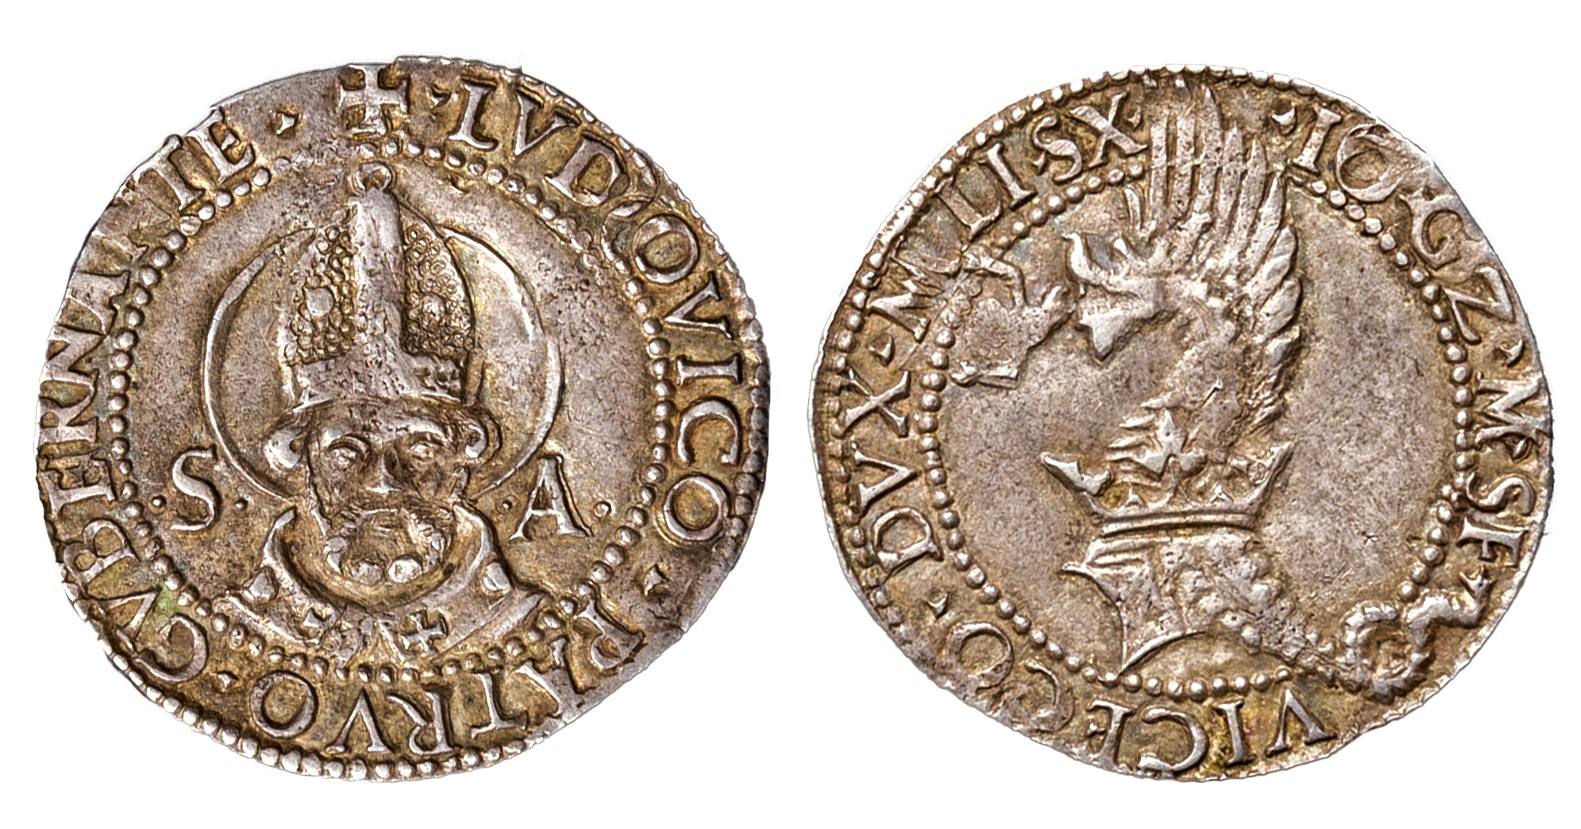 Milano-Grosso da 5 soldi in argento di Giovanni Galeazzo Maria Sforza, reggenza di Ludovico Maria Sforza (1481-1494), stima 400-500